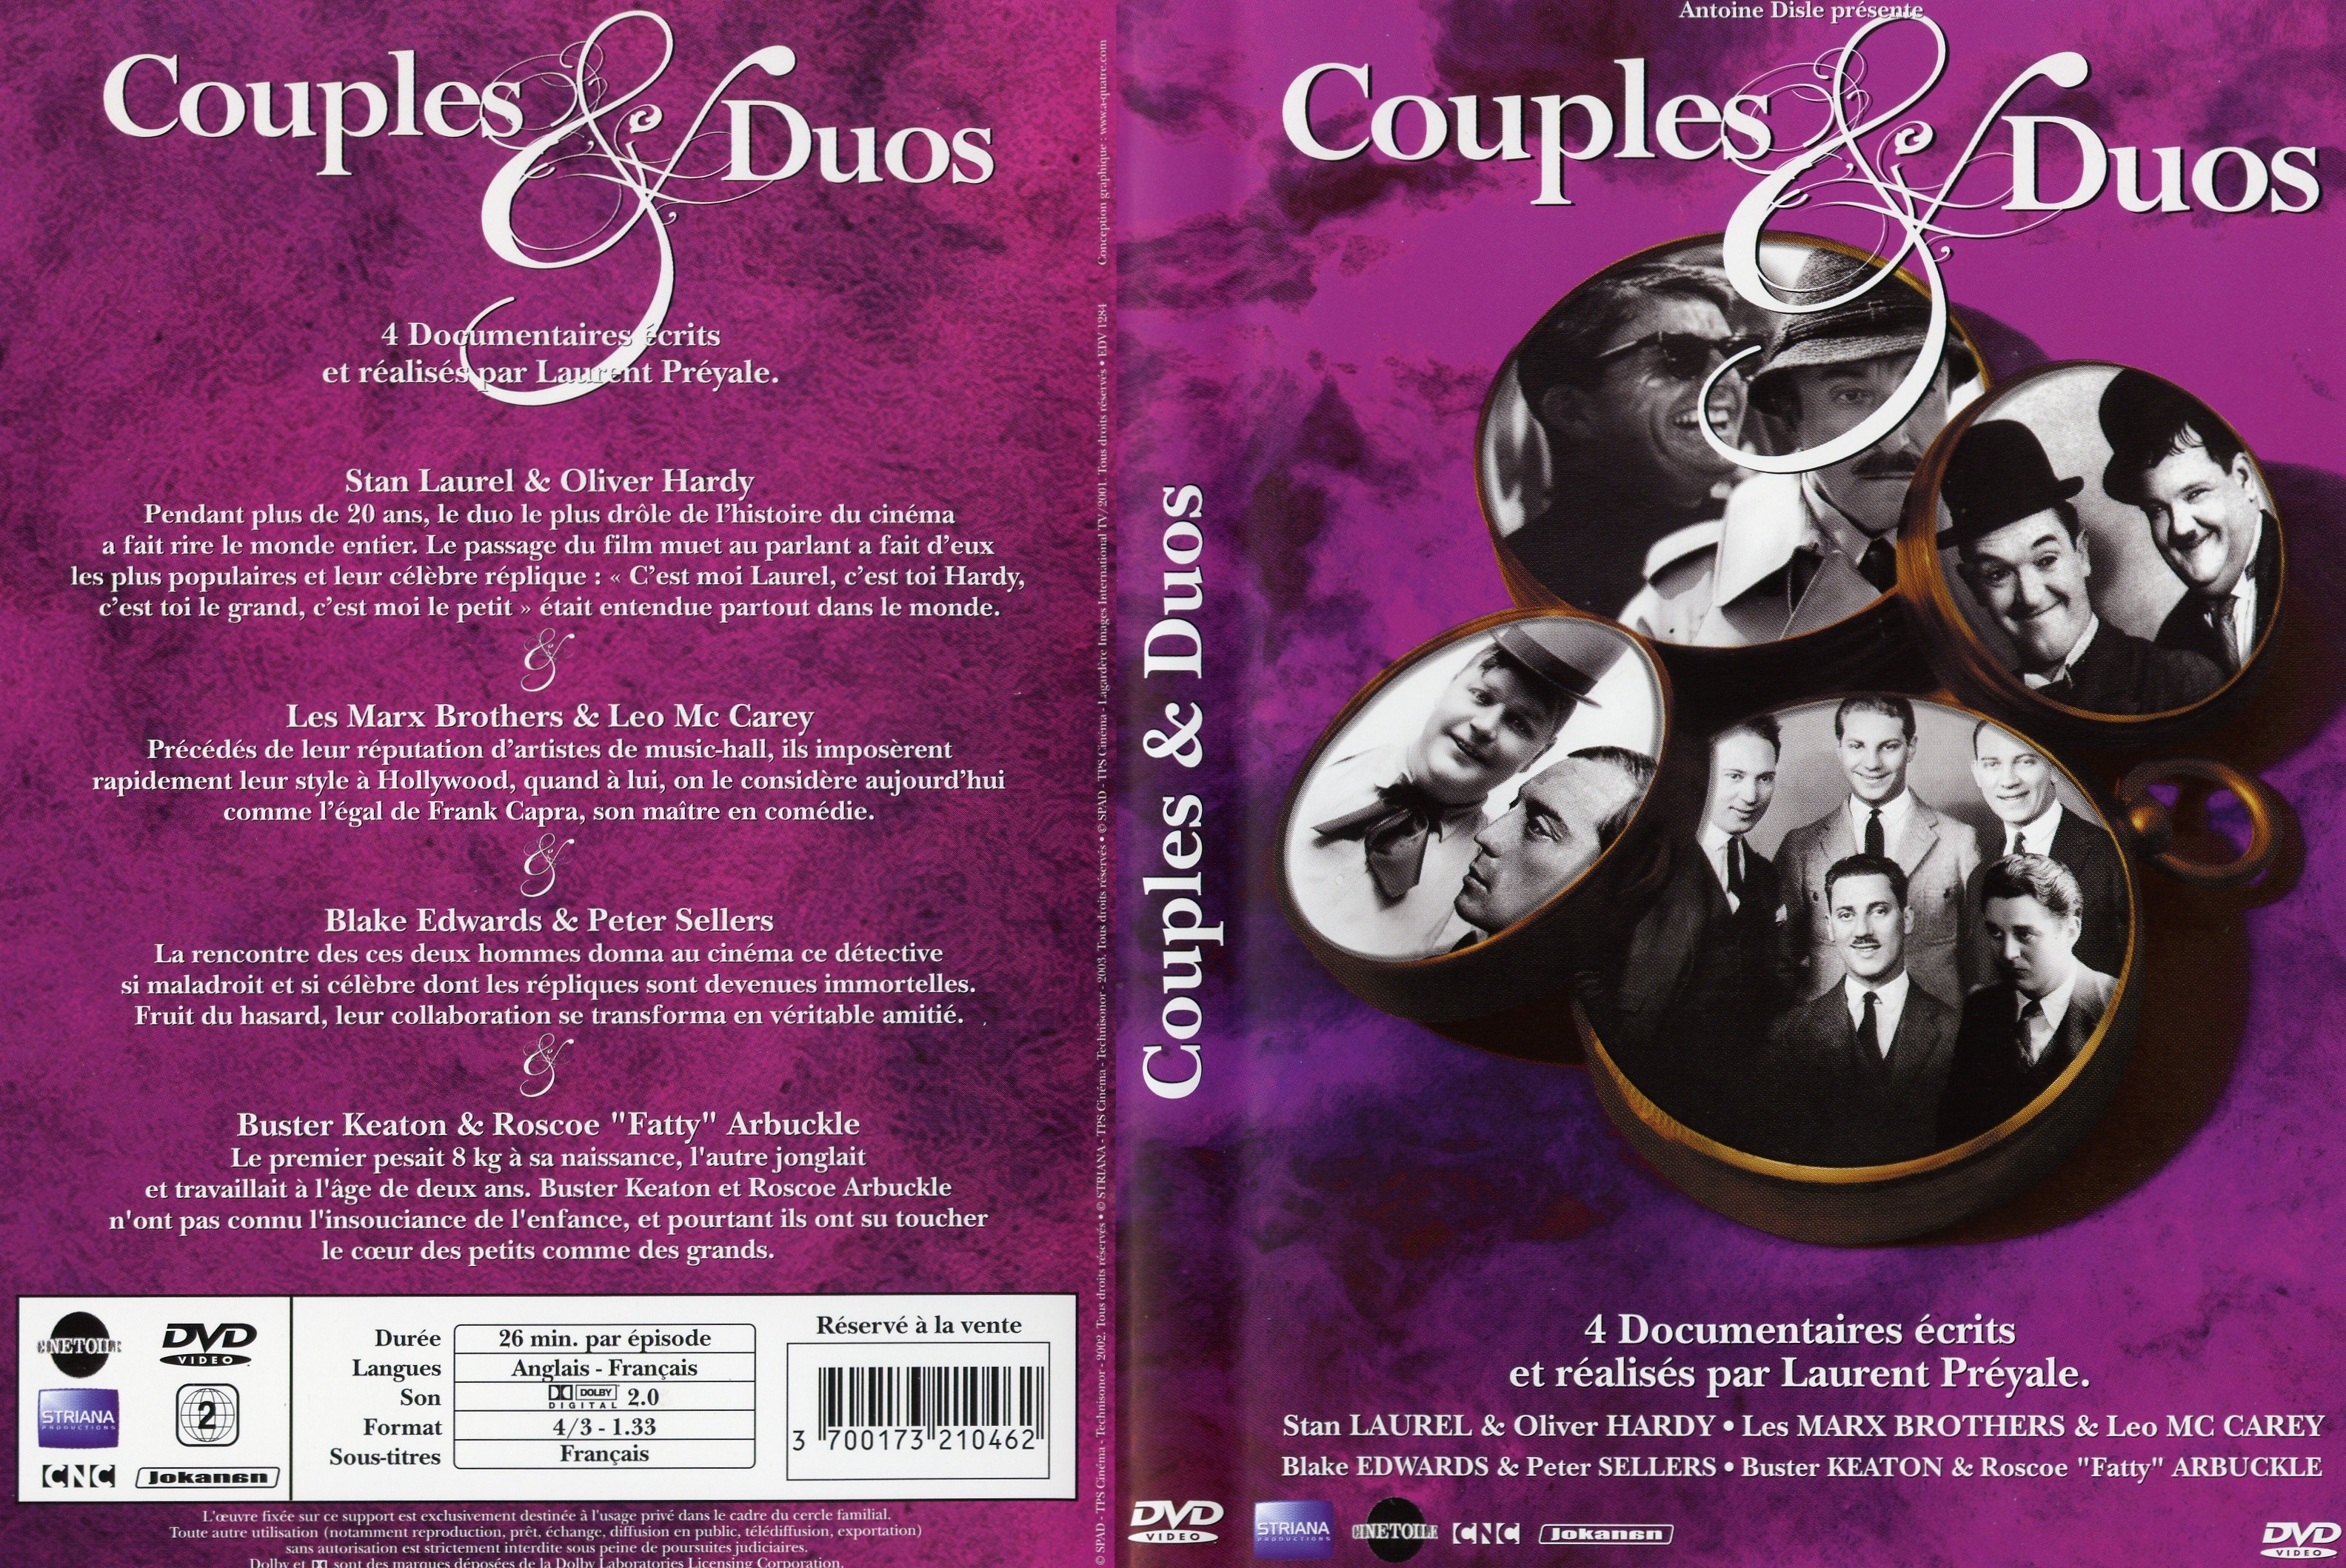 Jaquette DVD Couples et duos DVD 04